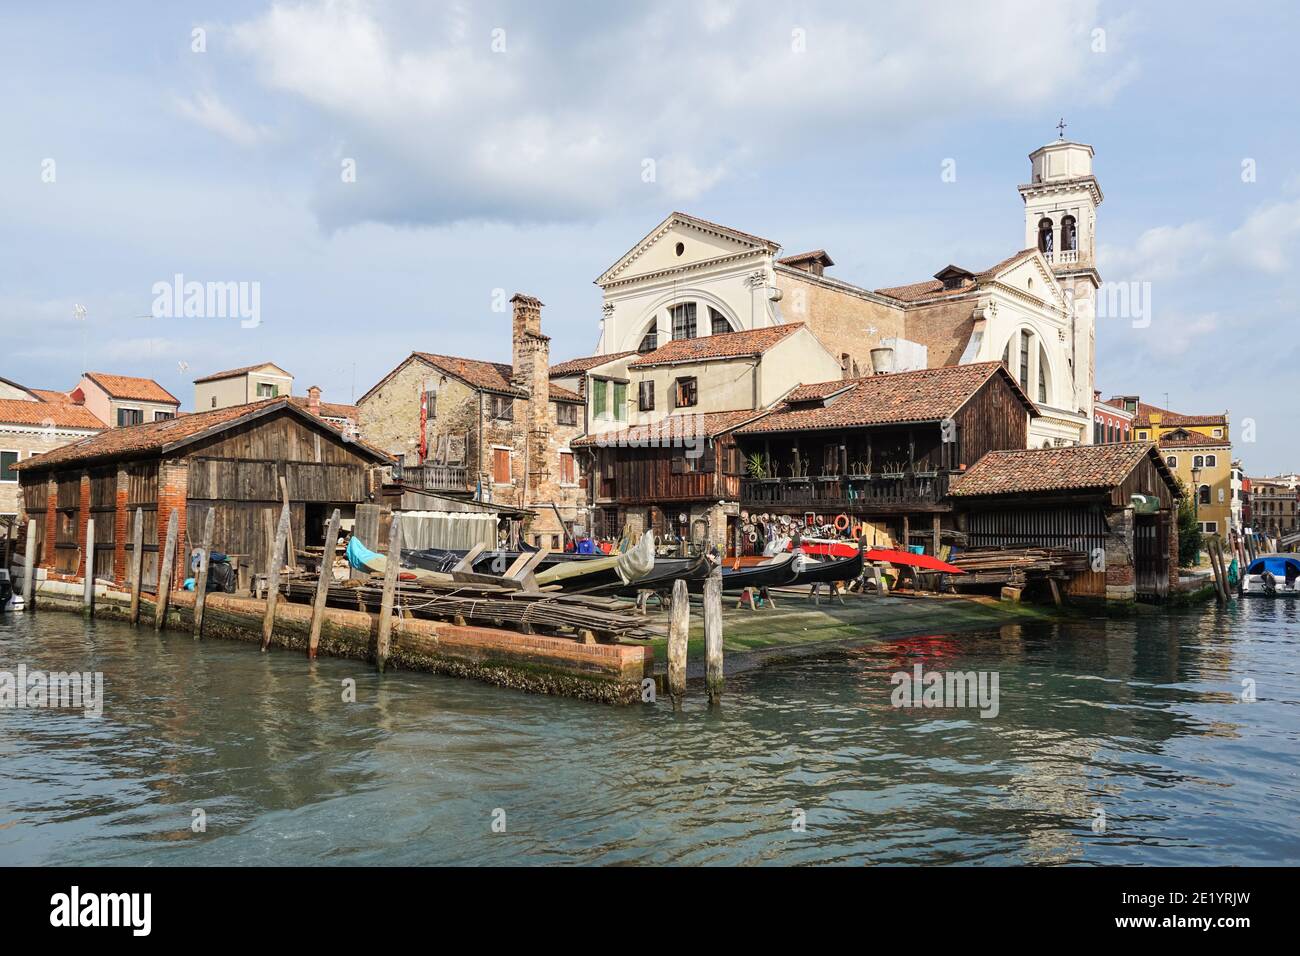 Squero di San Trovaso traditional boatyard making gondolas in the sestiere of Dorsoduro, Venice, Italy Stock Photo